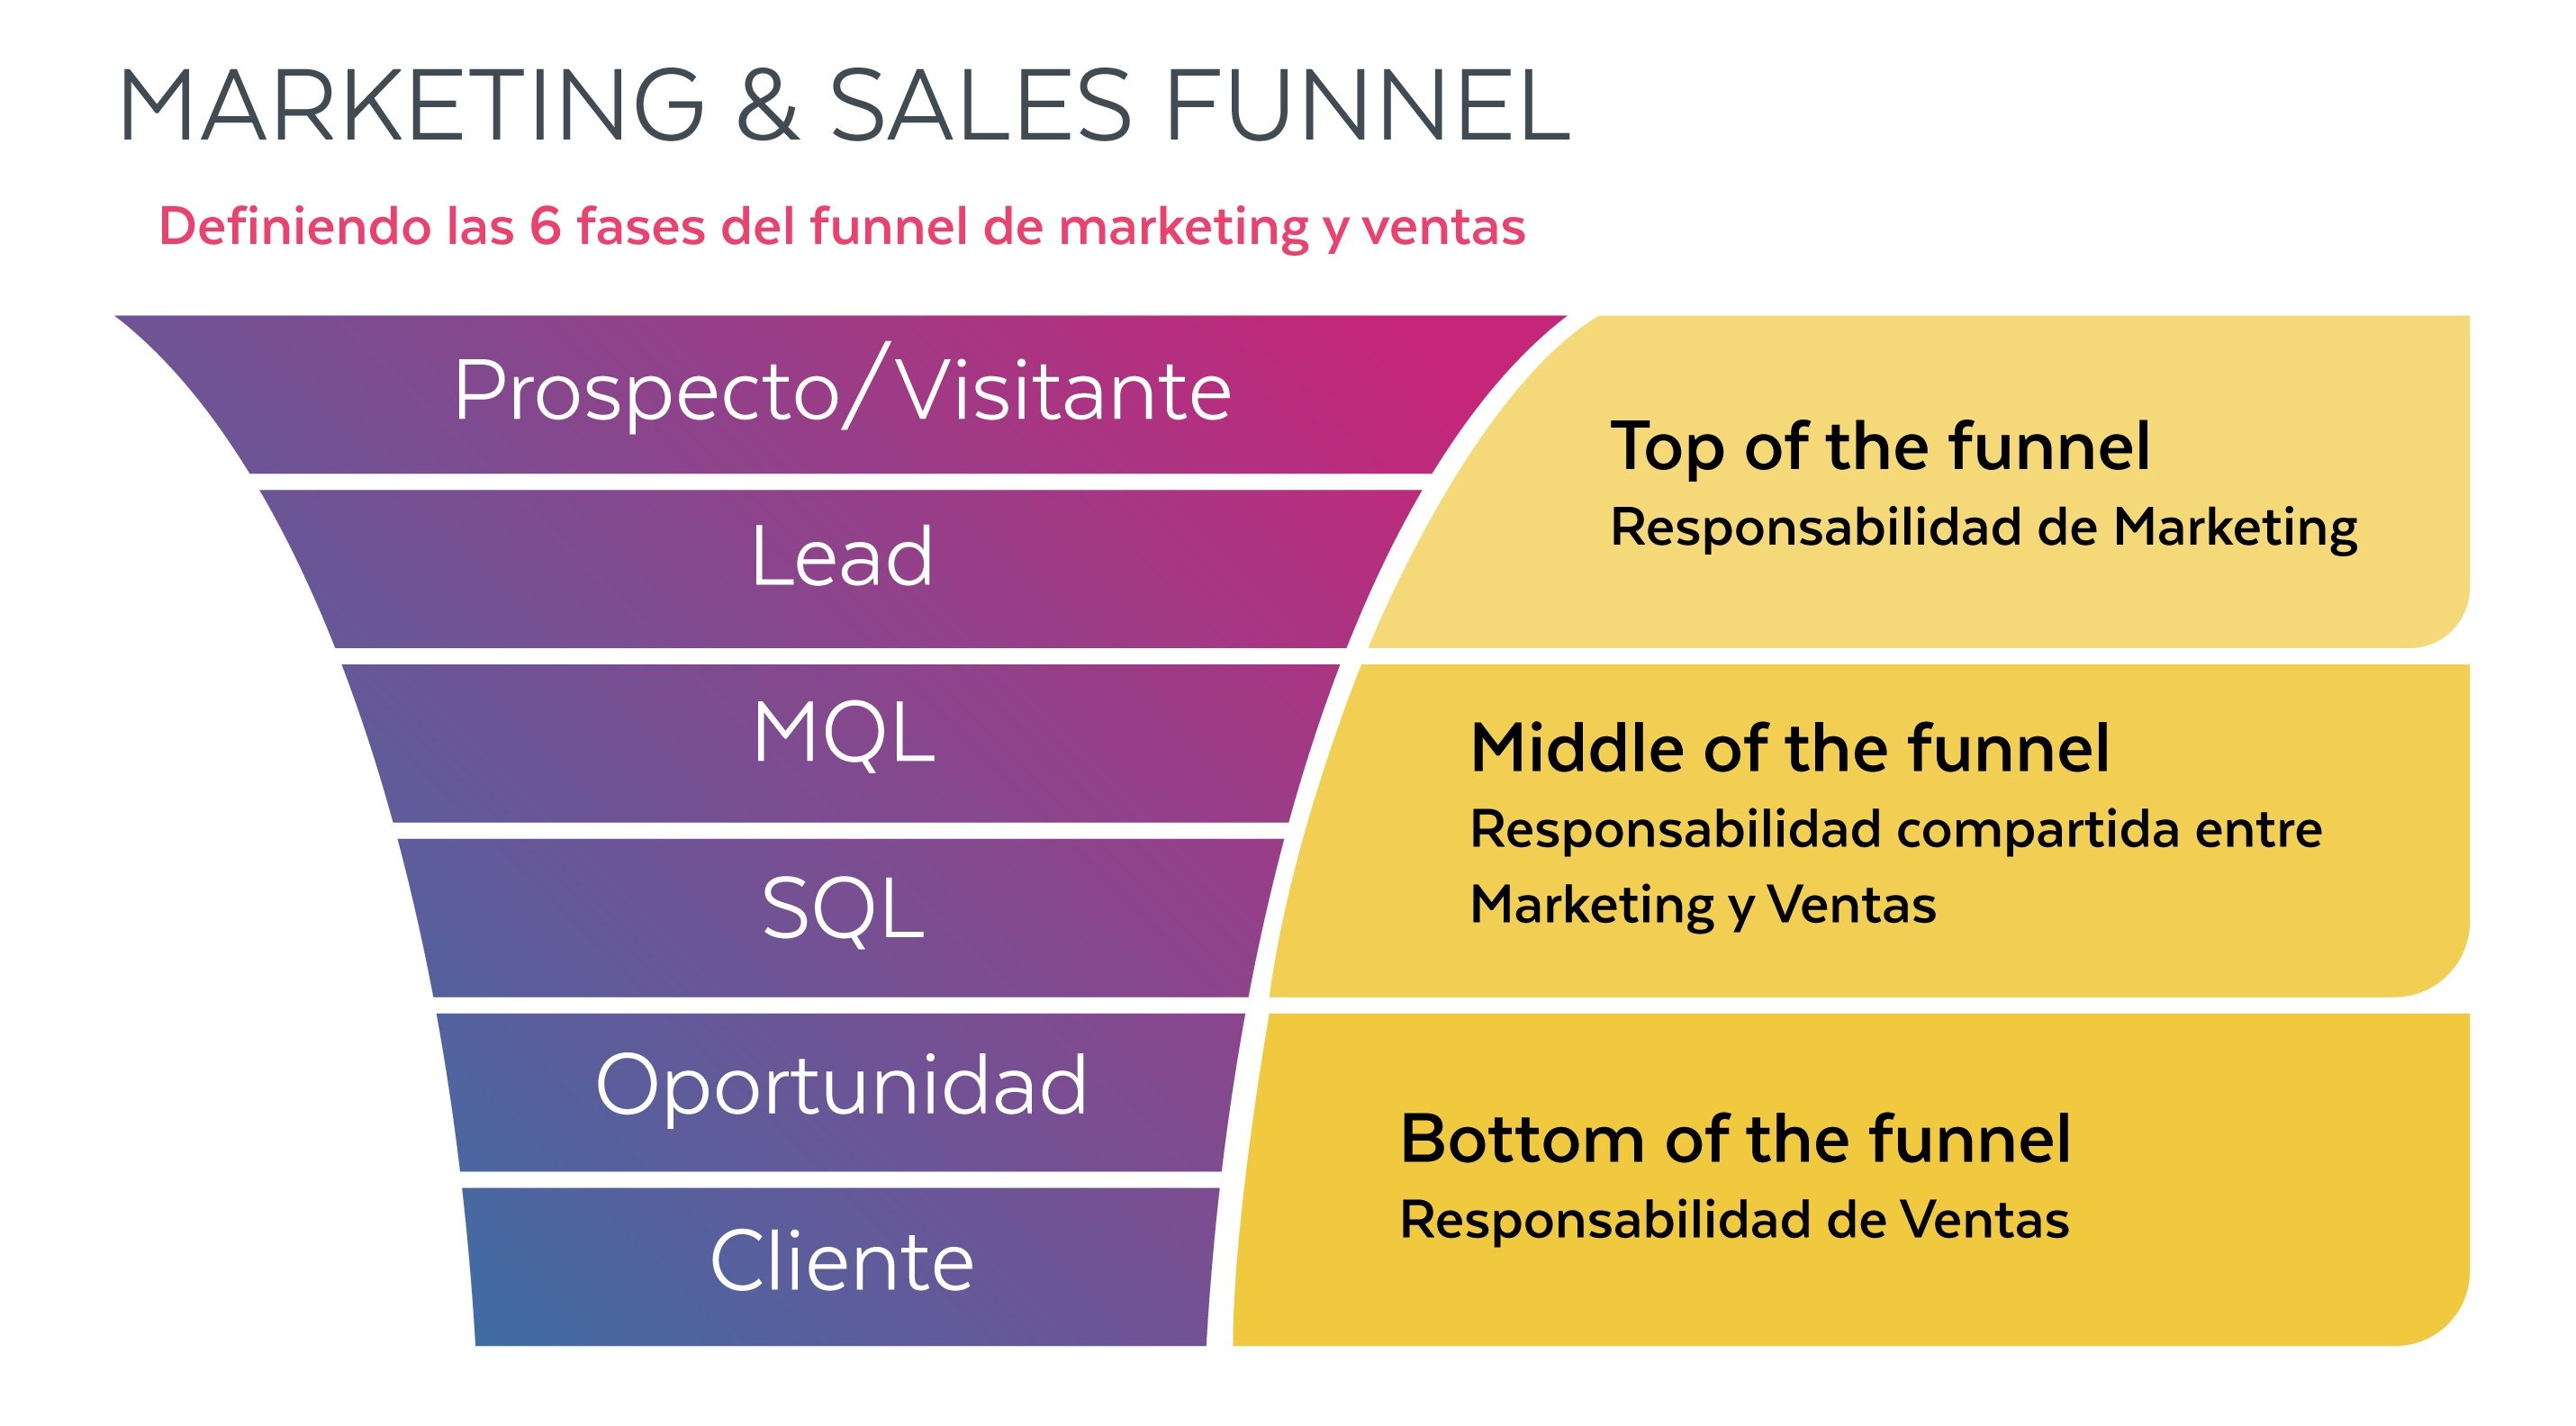 Imagen que muestra el embudo de marketing y ventas y sus diferentes etapas